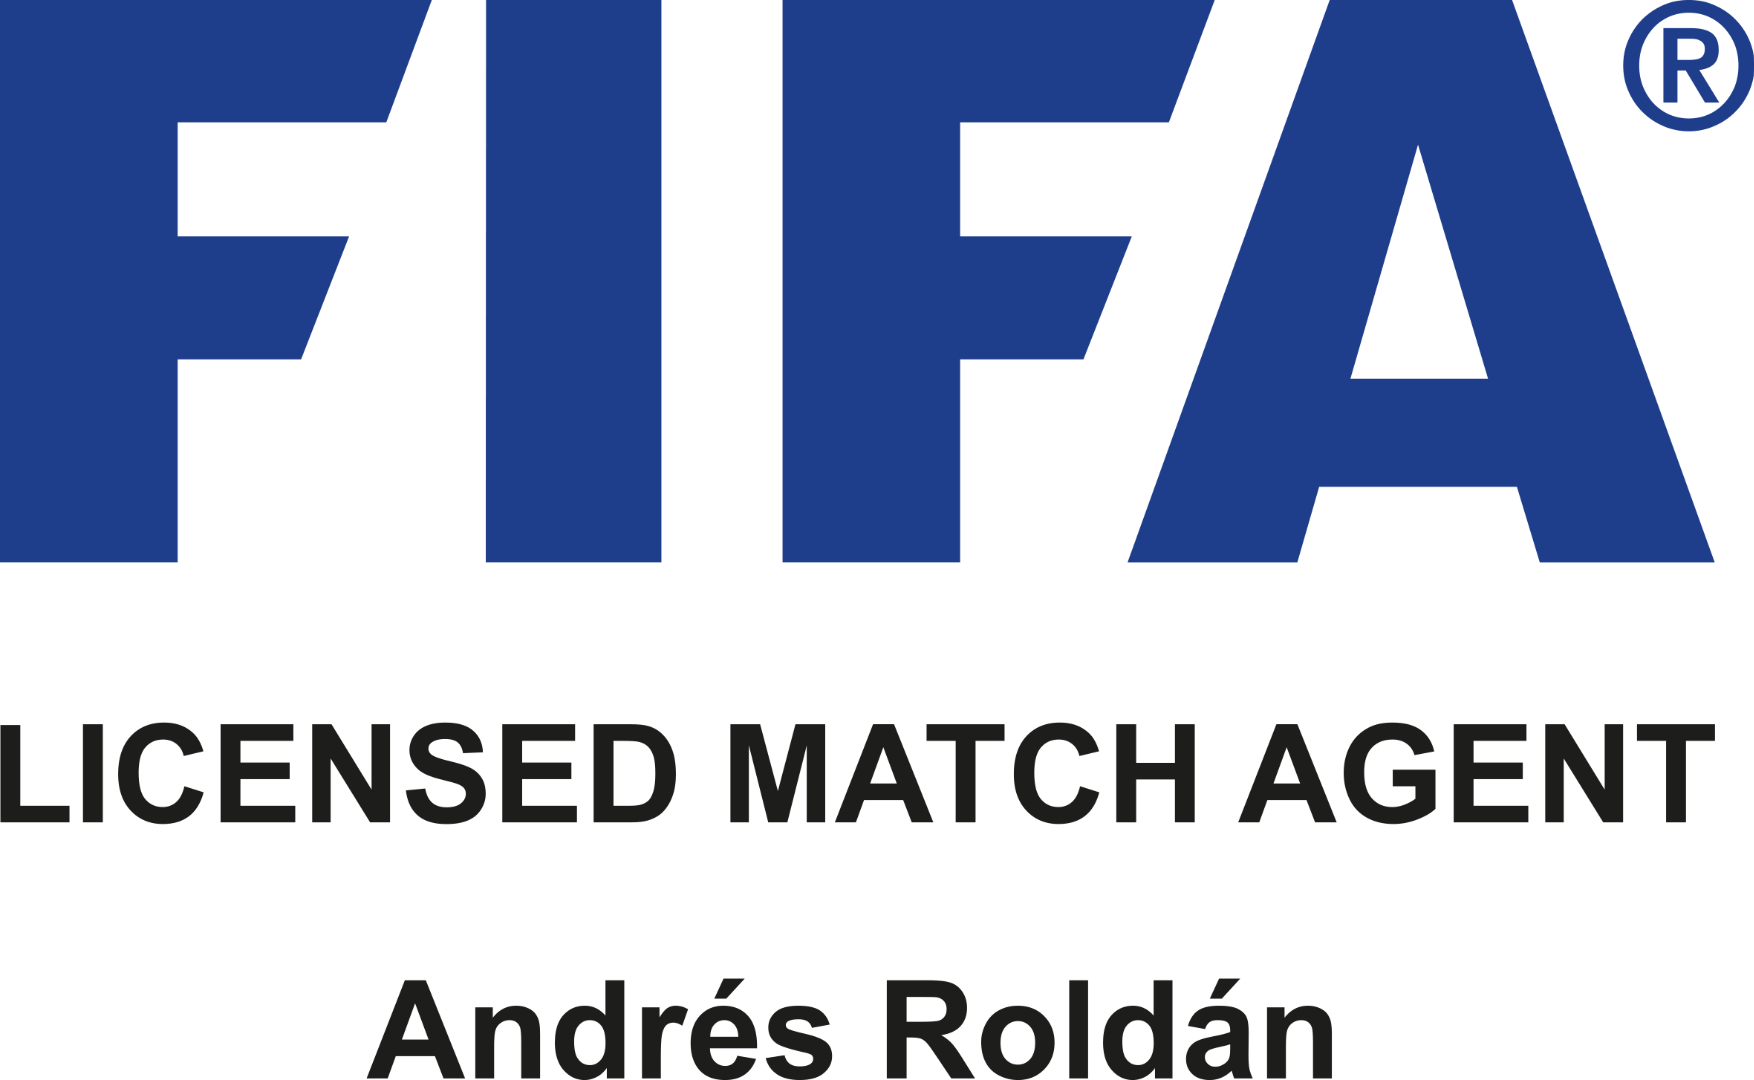 FIFA license match agent - Andrés Roldán